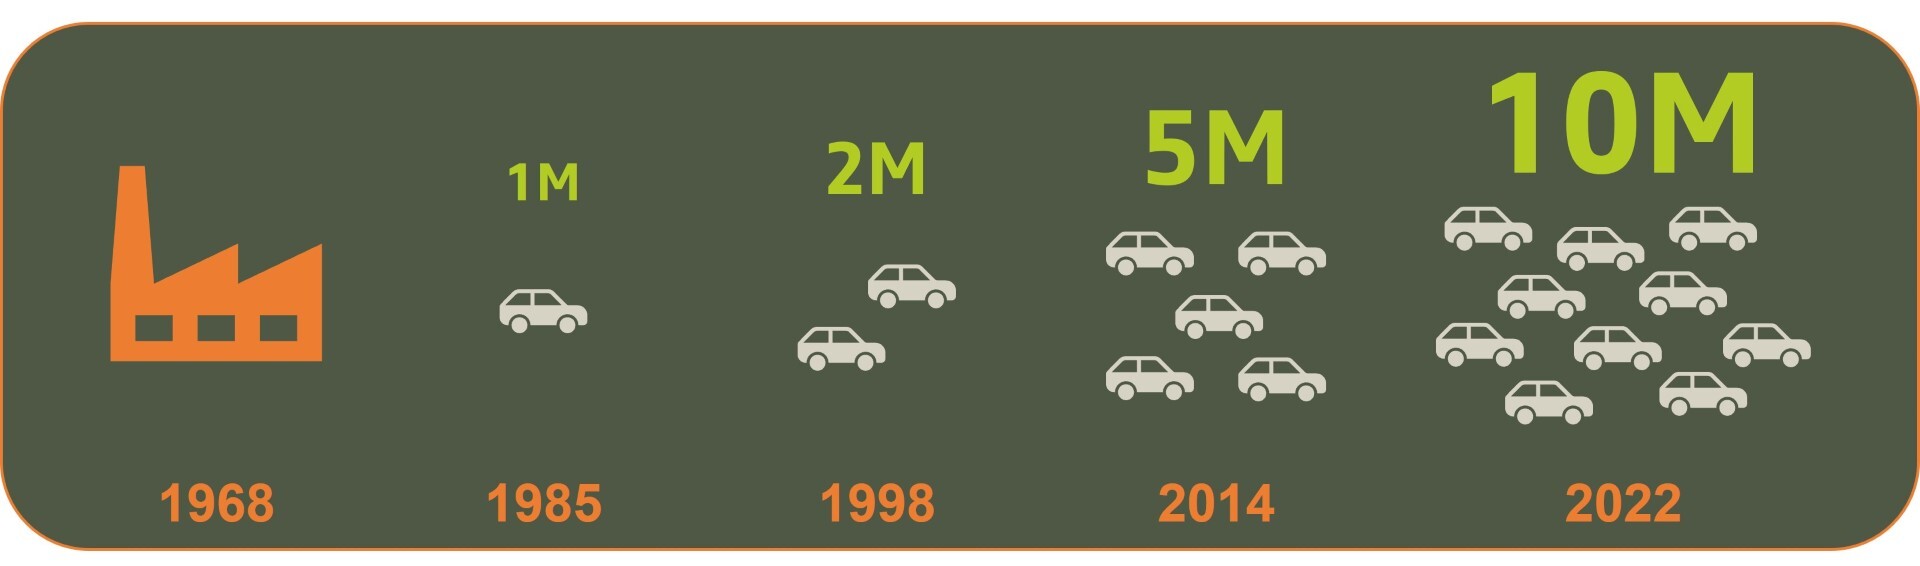 Η Dacia γιορτάζει 10.000.000 αυτοκίνητα